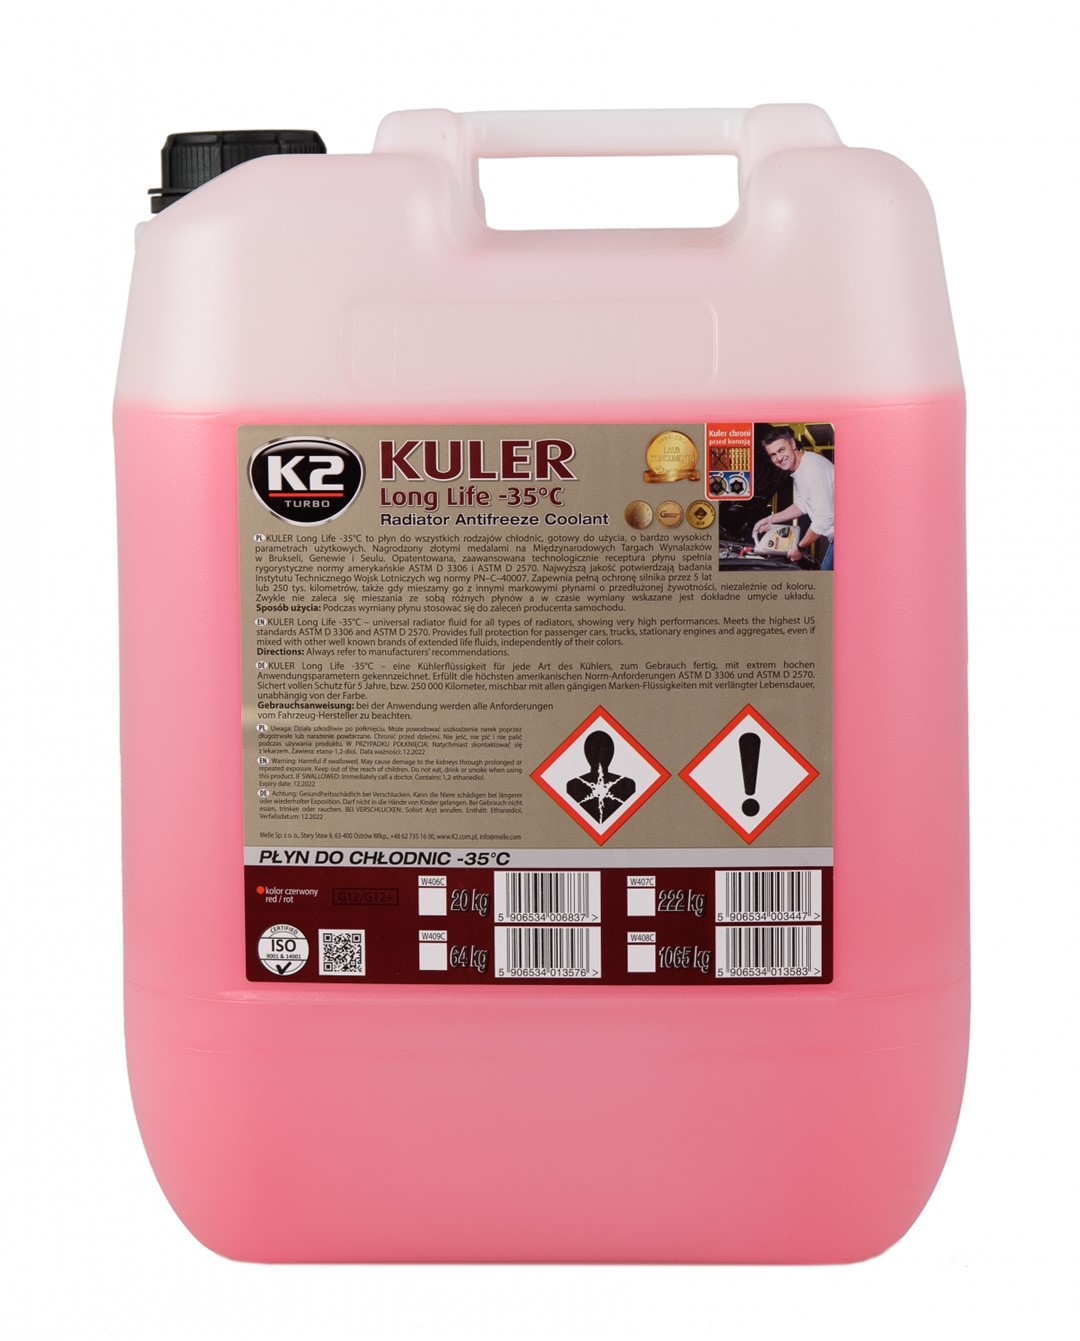 Płyn do chłodnic K2 Kuler G12 20L -35C Long Life czerwony   (W406C)